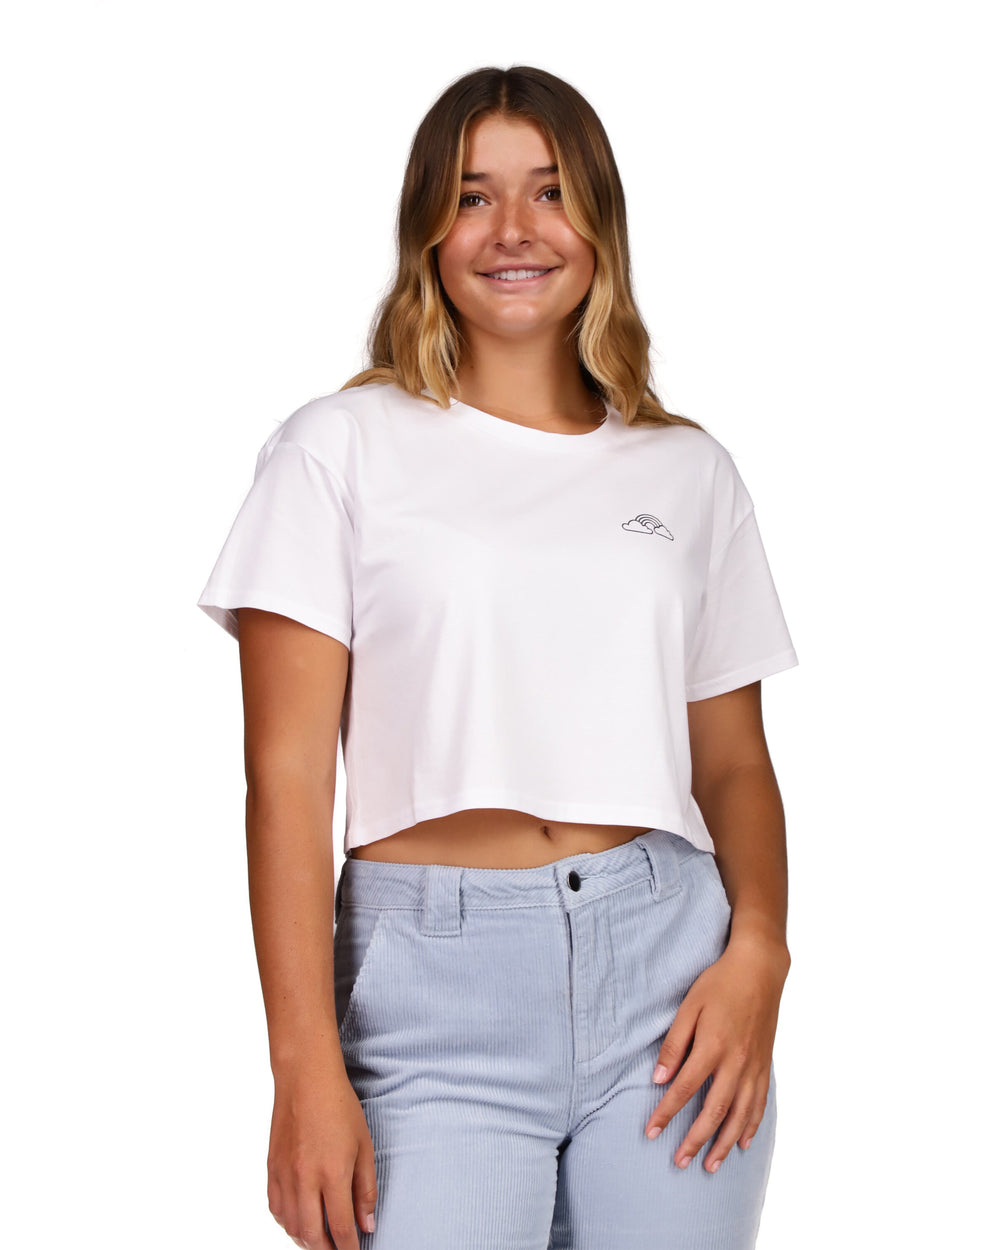 Tati x Body Glove Rainbow Crop T-Shirt - White